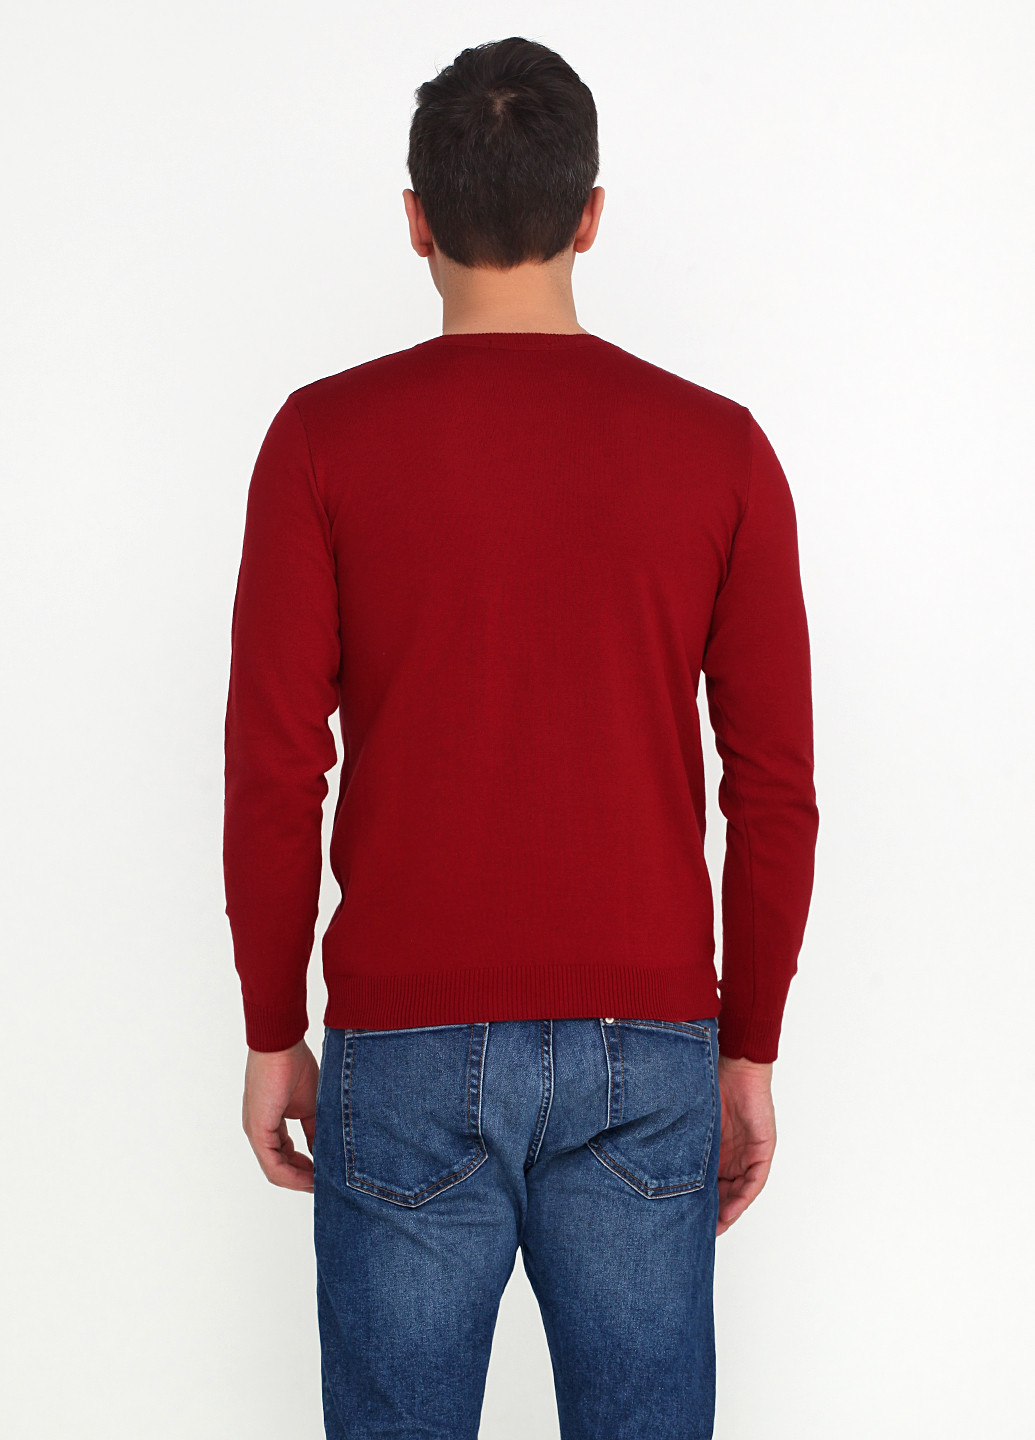 Бордовый демисезонный пуловер пуловер Zaldiz